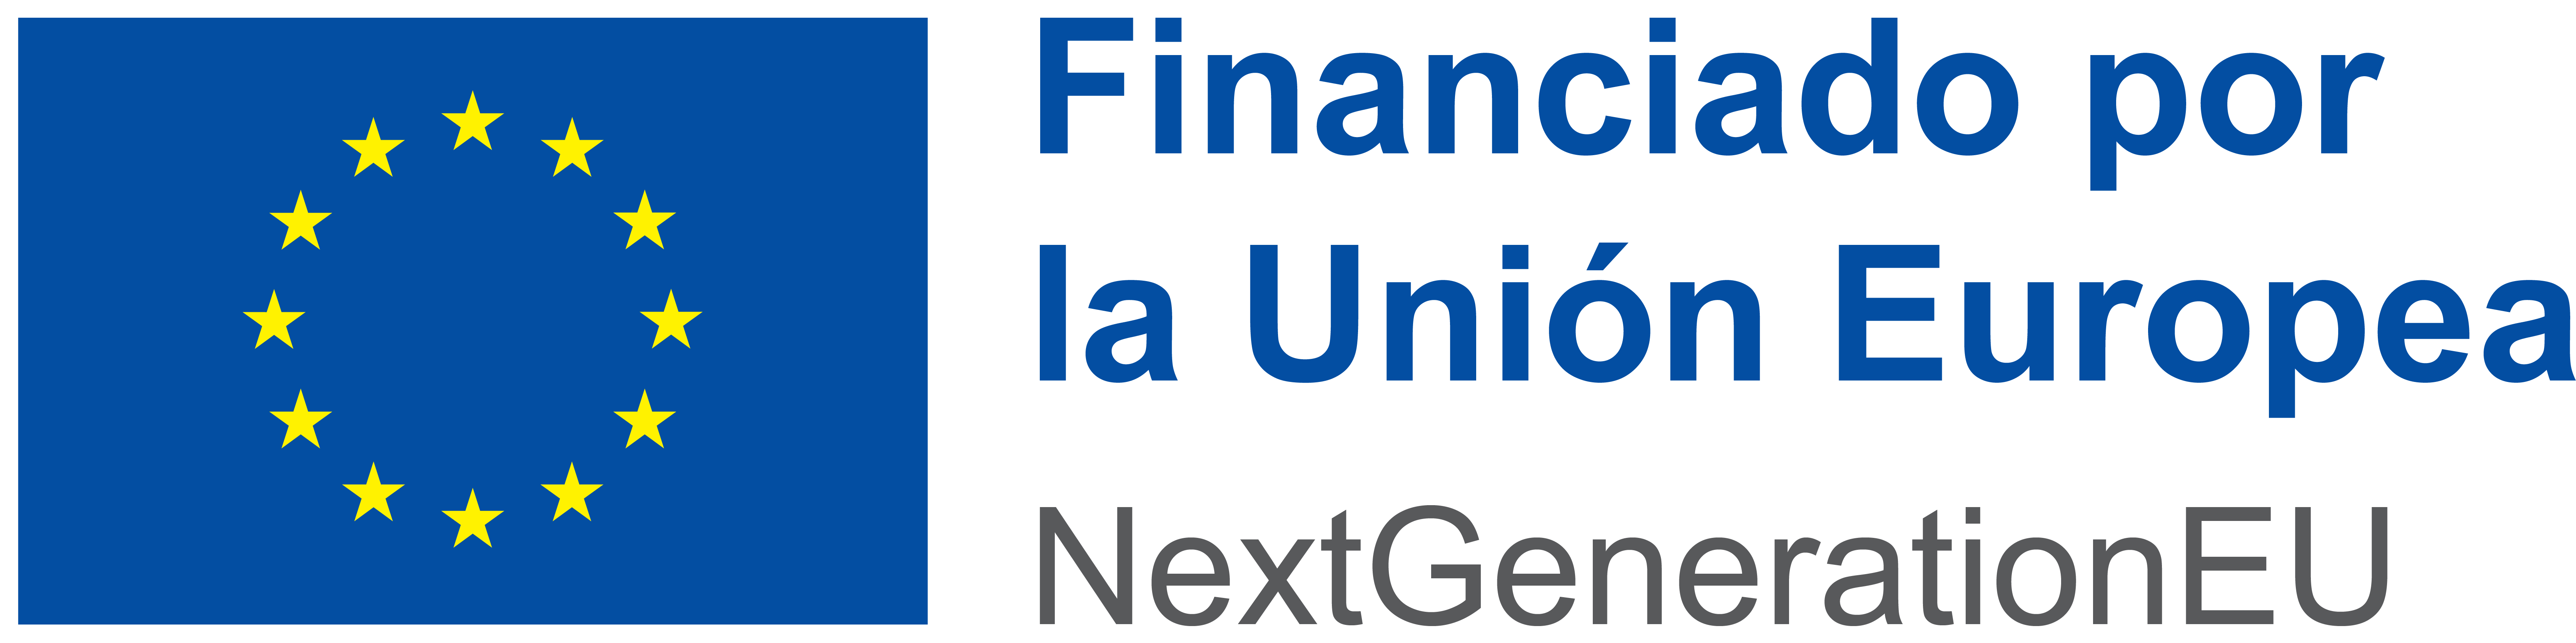 Emblema de la Unión Europea con declaración de financiación adecuada que indica Financiado por La Unión Europea - NextGenerationEU